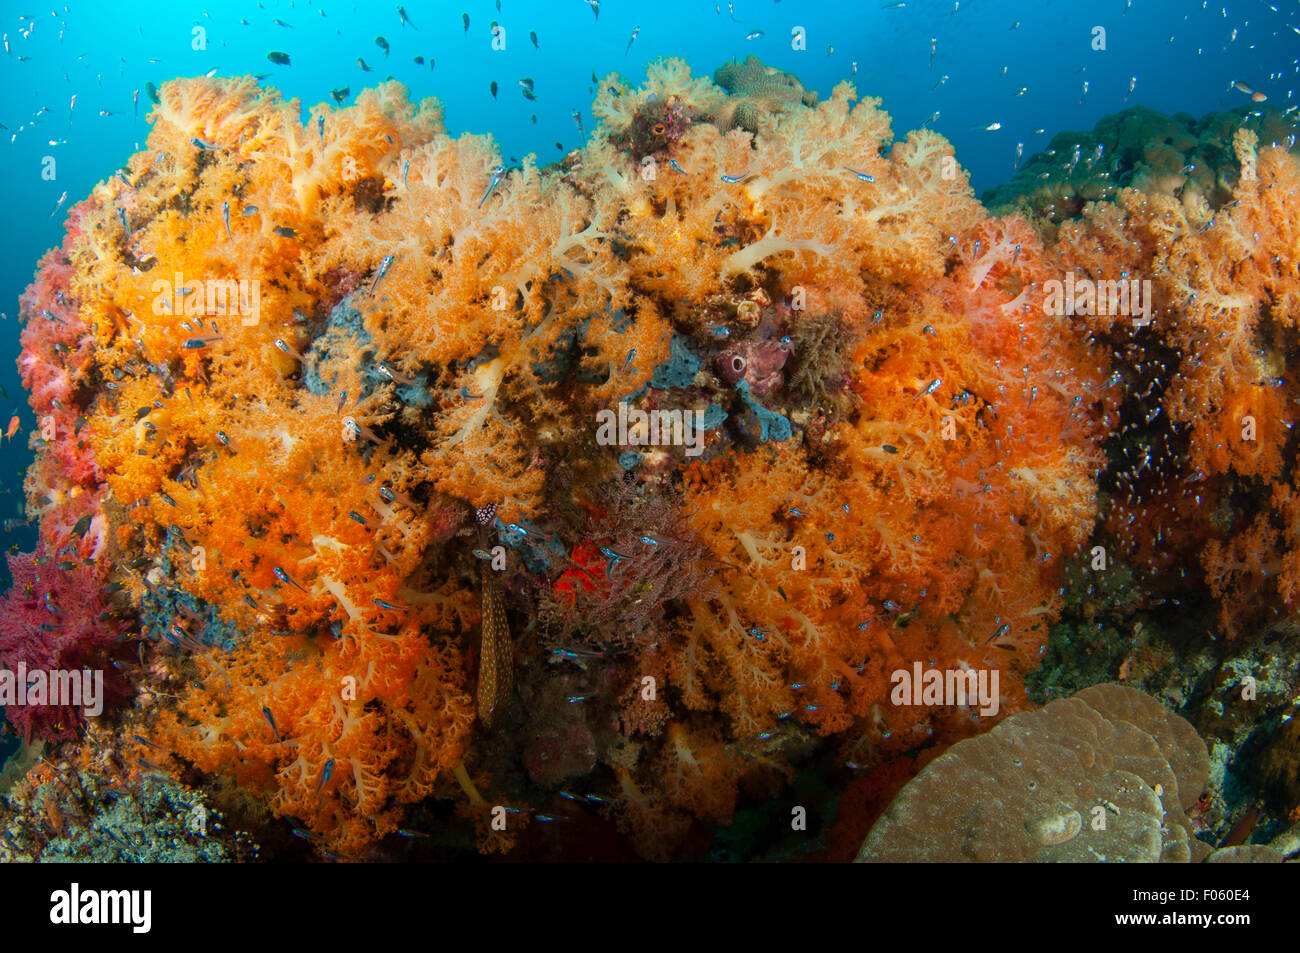 Orange soft corals, Dendronephthya sp., Citrus Ridge, Gam Island, Raja Ampat, Indonesia, Pacific Ocean Stock Photo